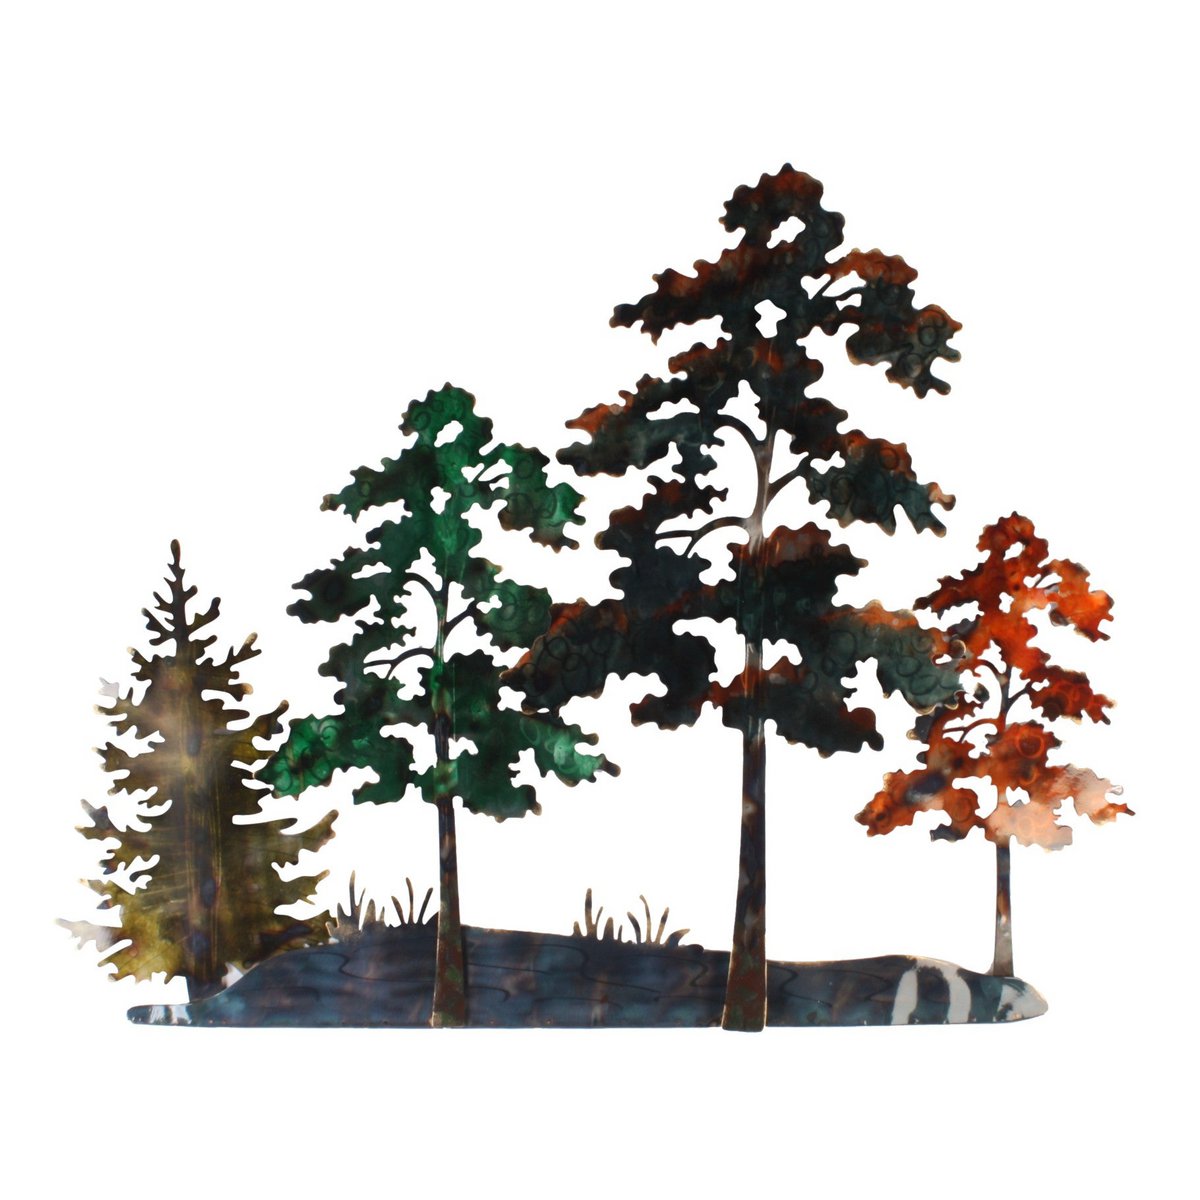 Floresta – 103 x 80 cm Wanddeko Wald Bäume Wandbild Metall Wand Dekoration 3D Artishoque